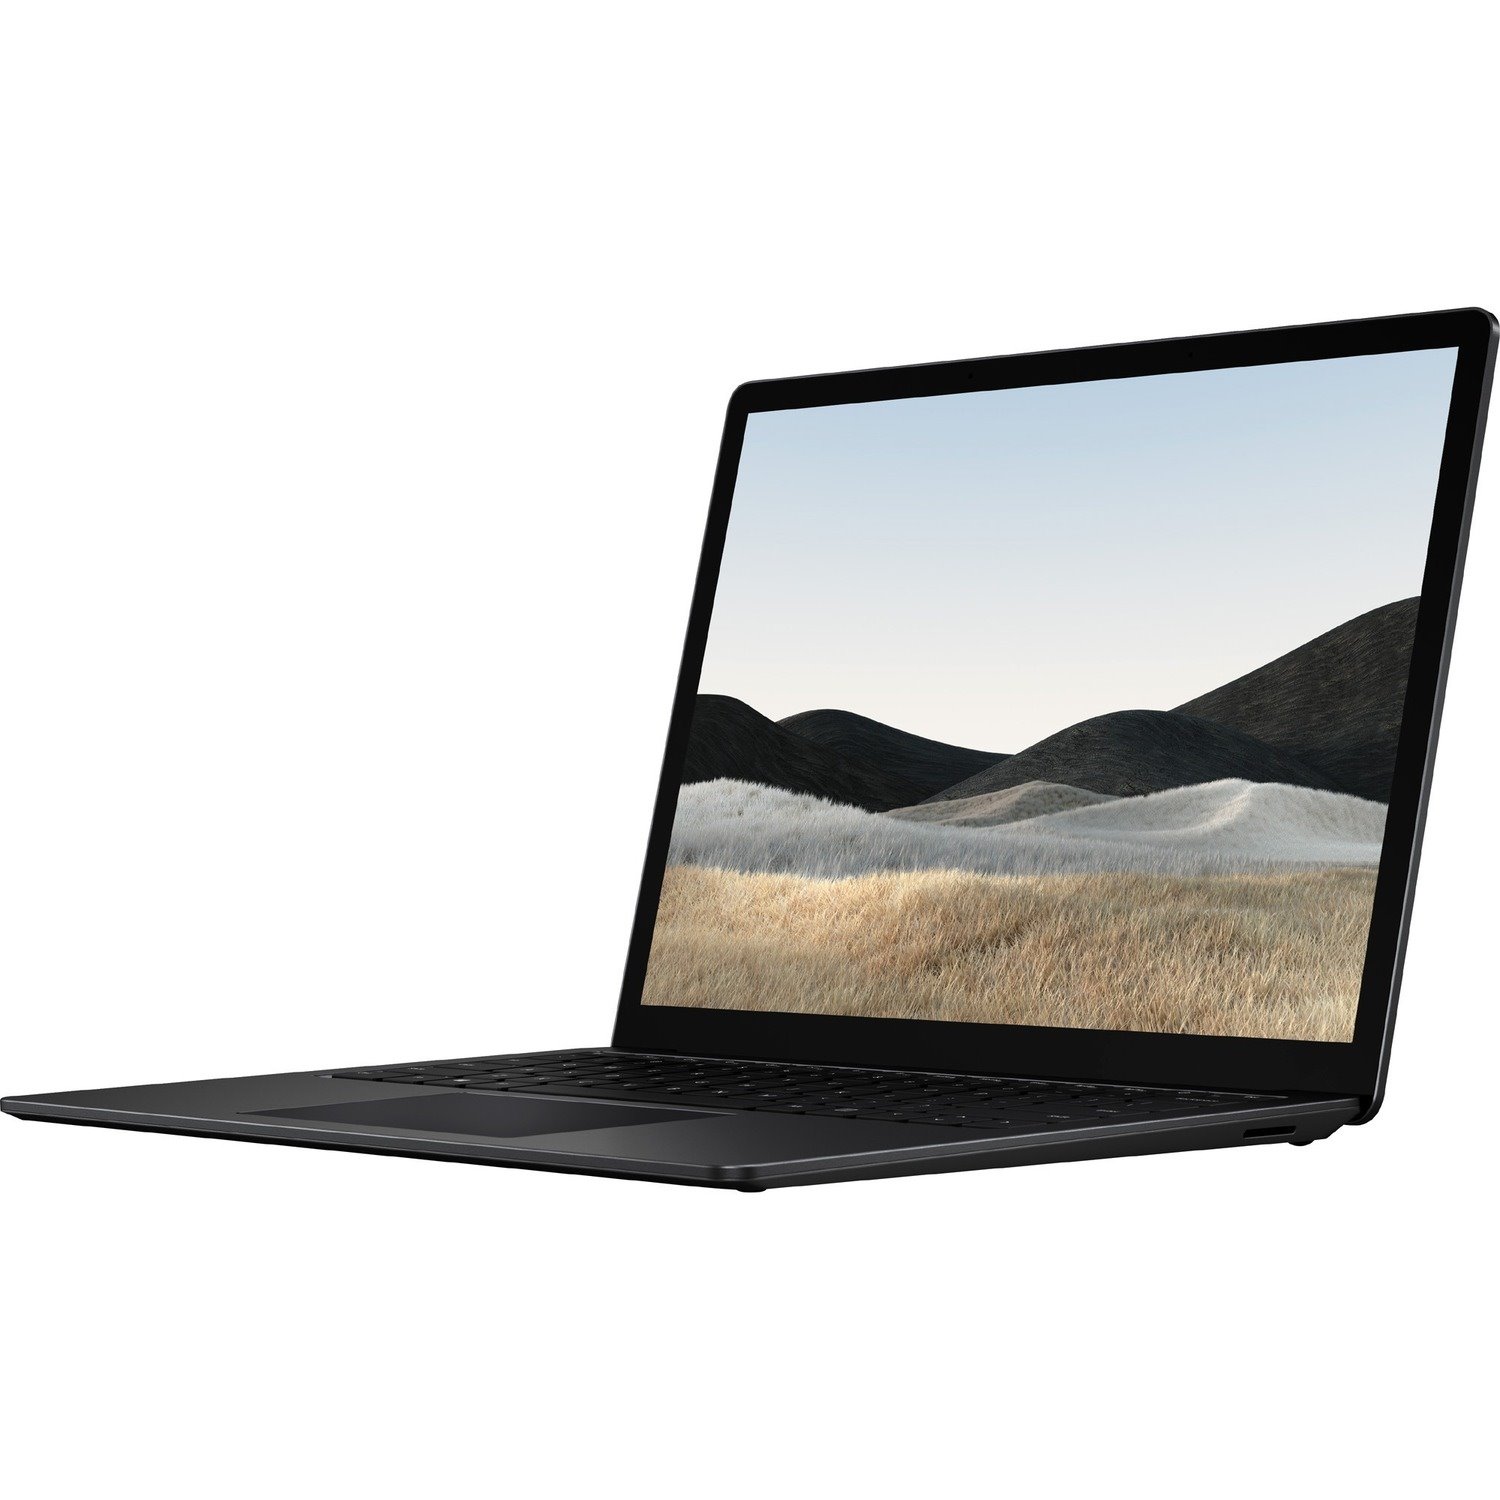 Microsoft Surface Laptop 4 34.3 cm (13.5") Touchscreen Notebook - 2256 x 1504 - Intel Core i5 11th Gen i5-1145G7 2.60 GHz - 8 GB Total RAM - 512 GB SSD - Matte Black